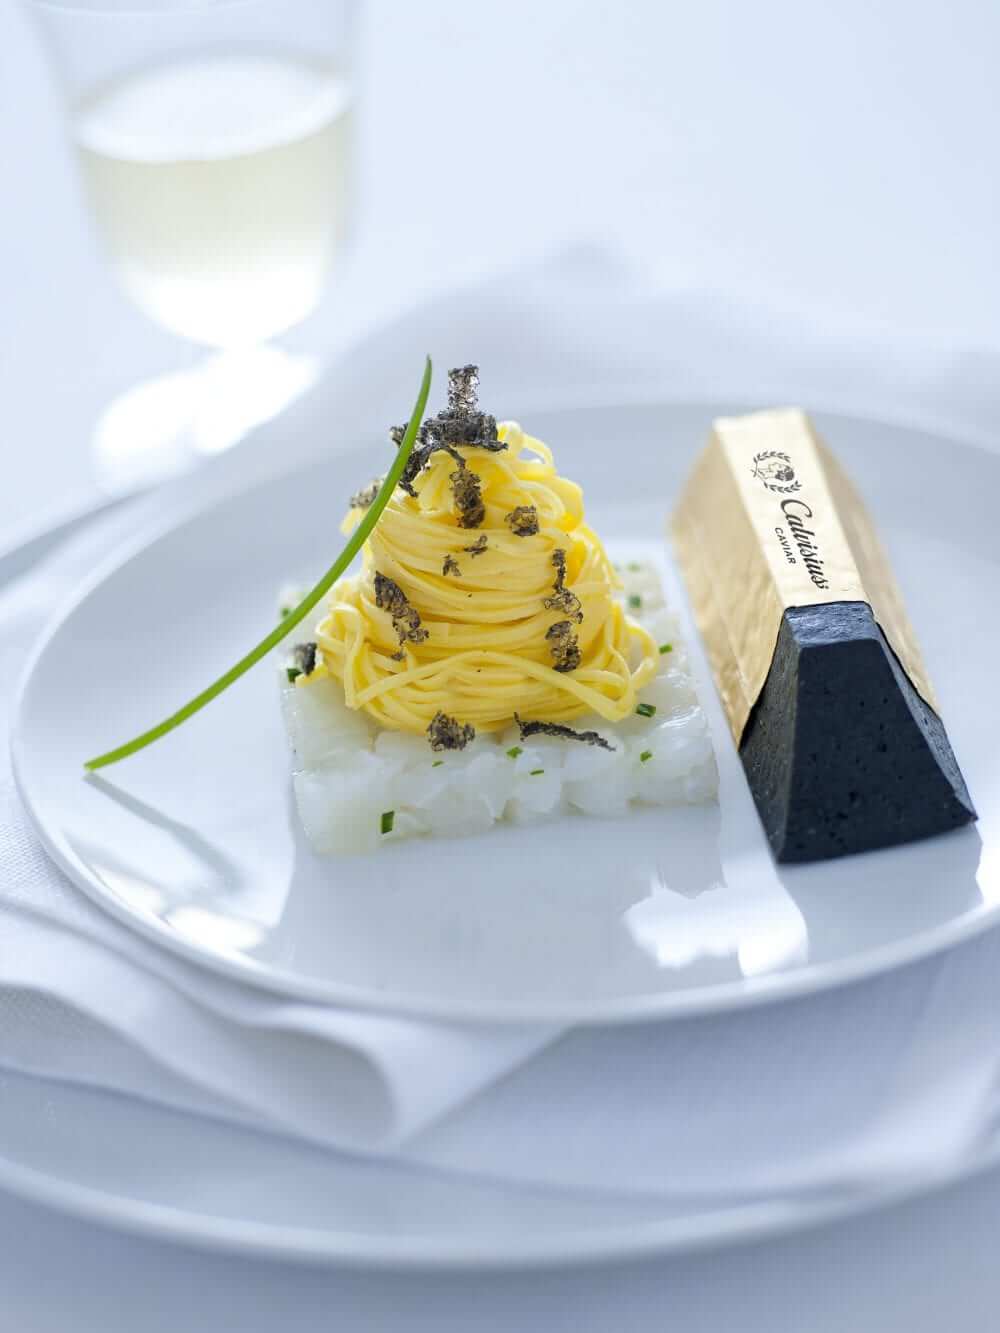 Lingotto (pressed caviar)